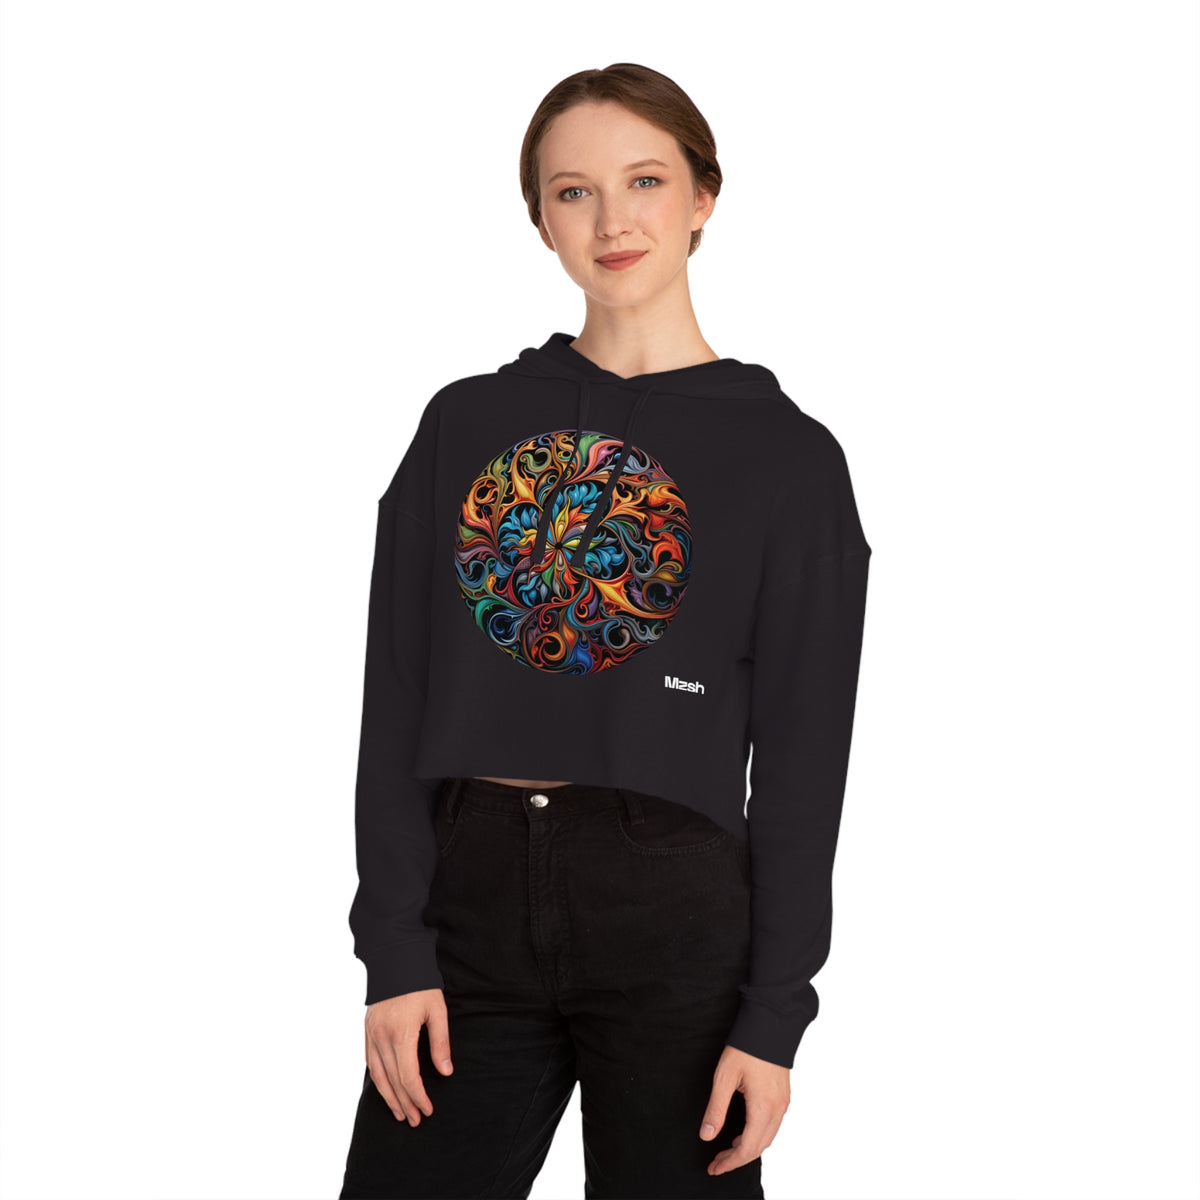 Kaleidoscopic Kanvas - Hooded Sweatshirt